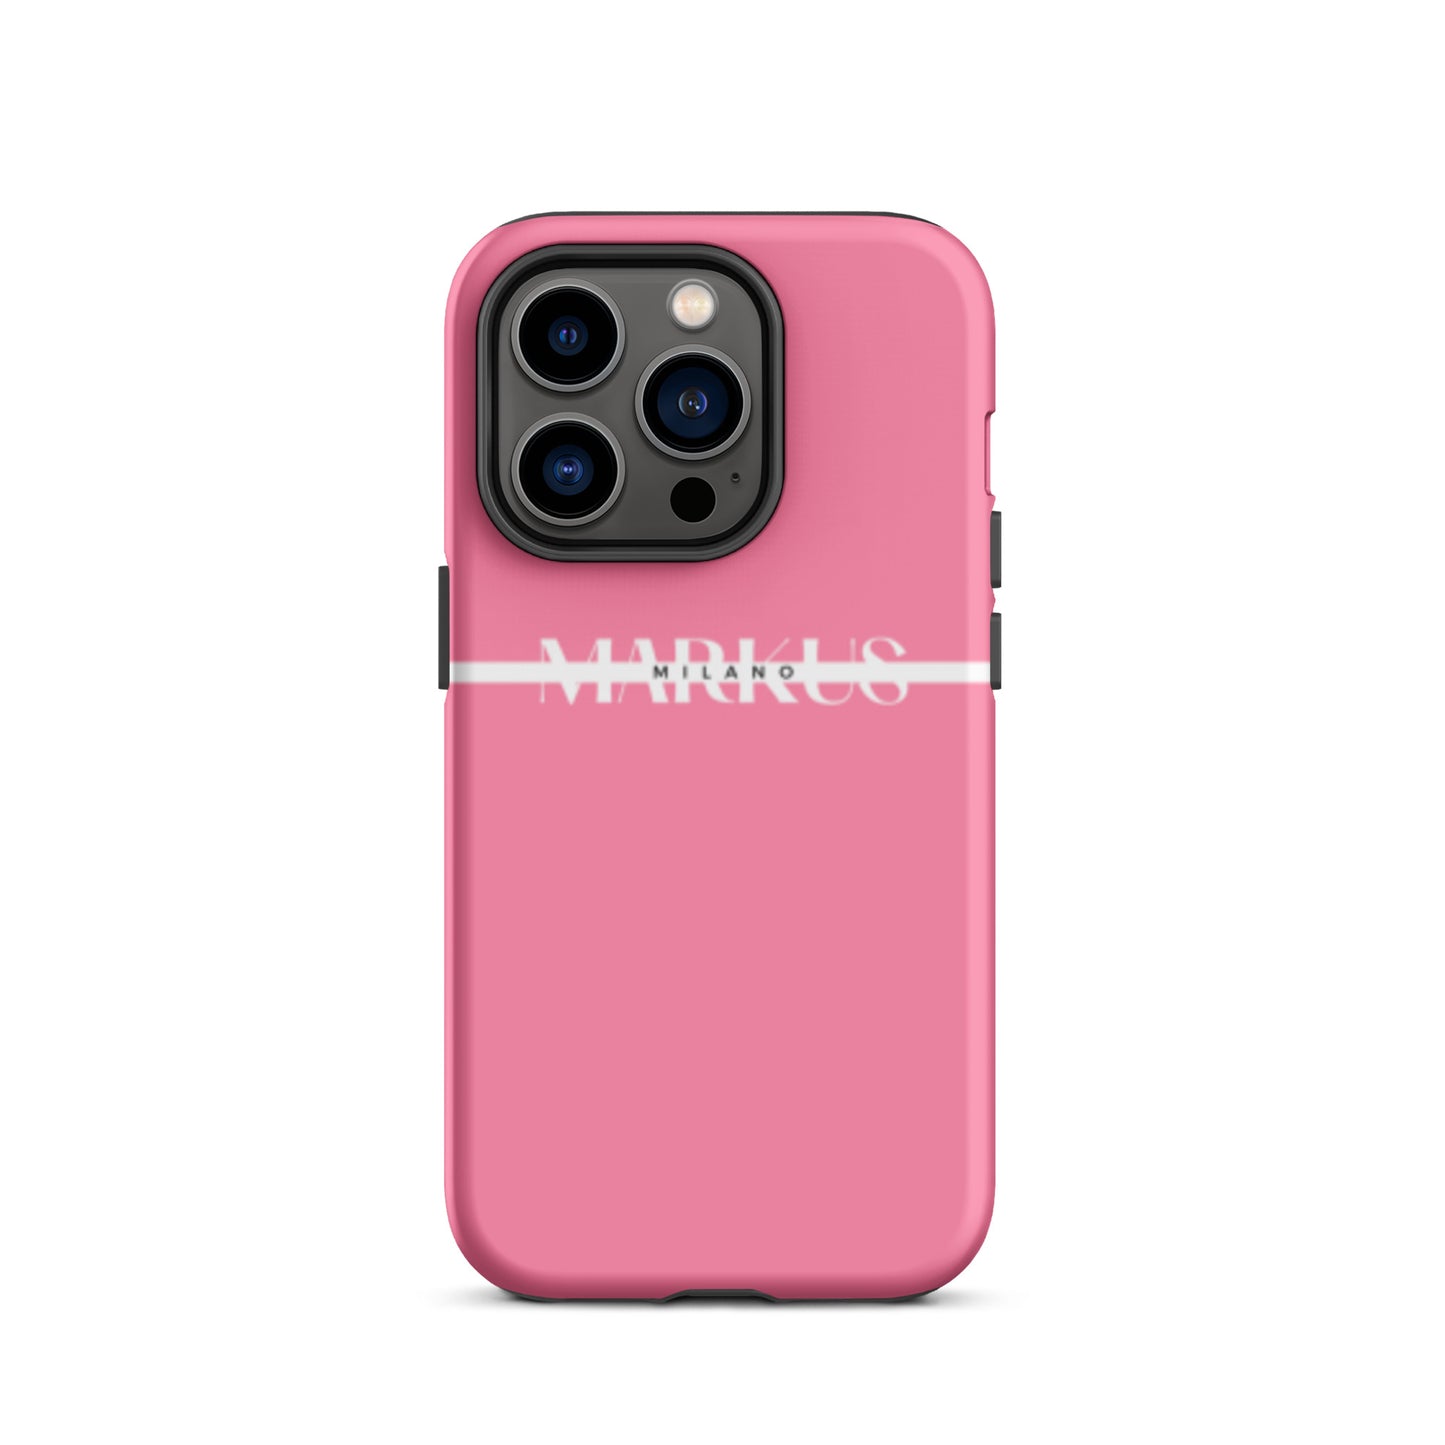 Cover iPhone Pink Rigida